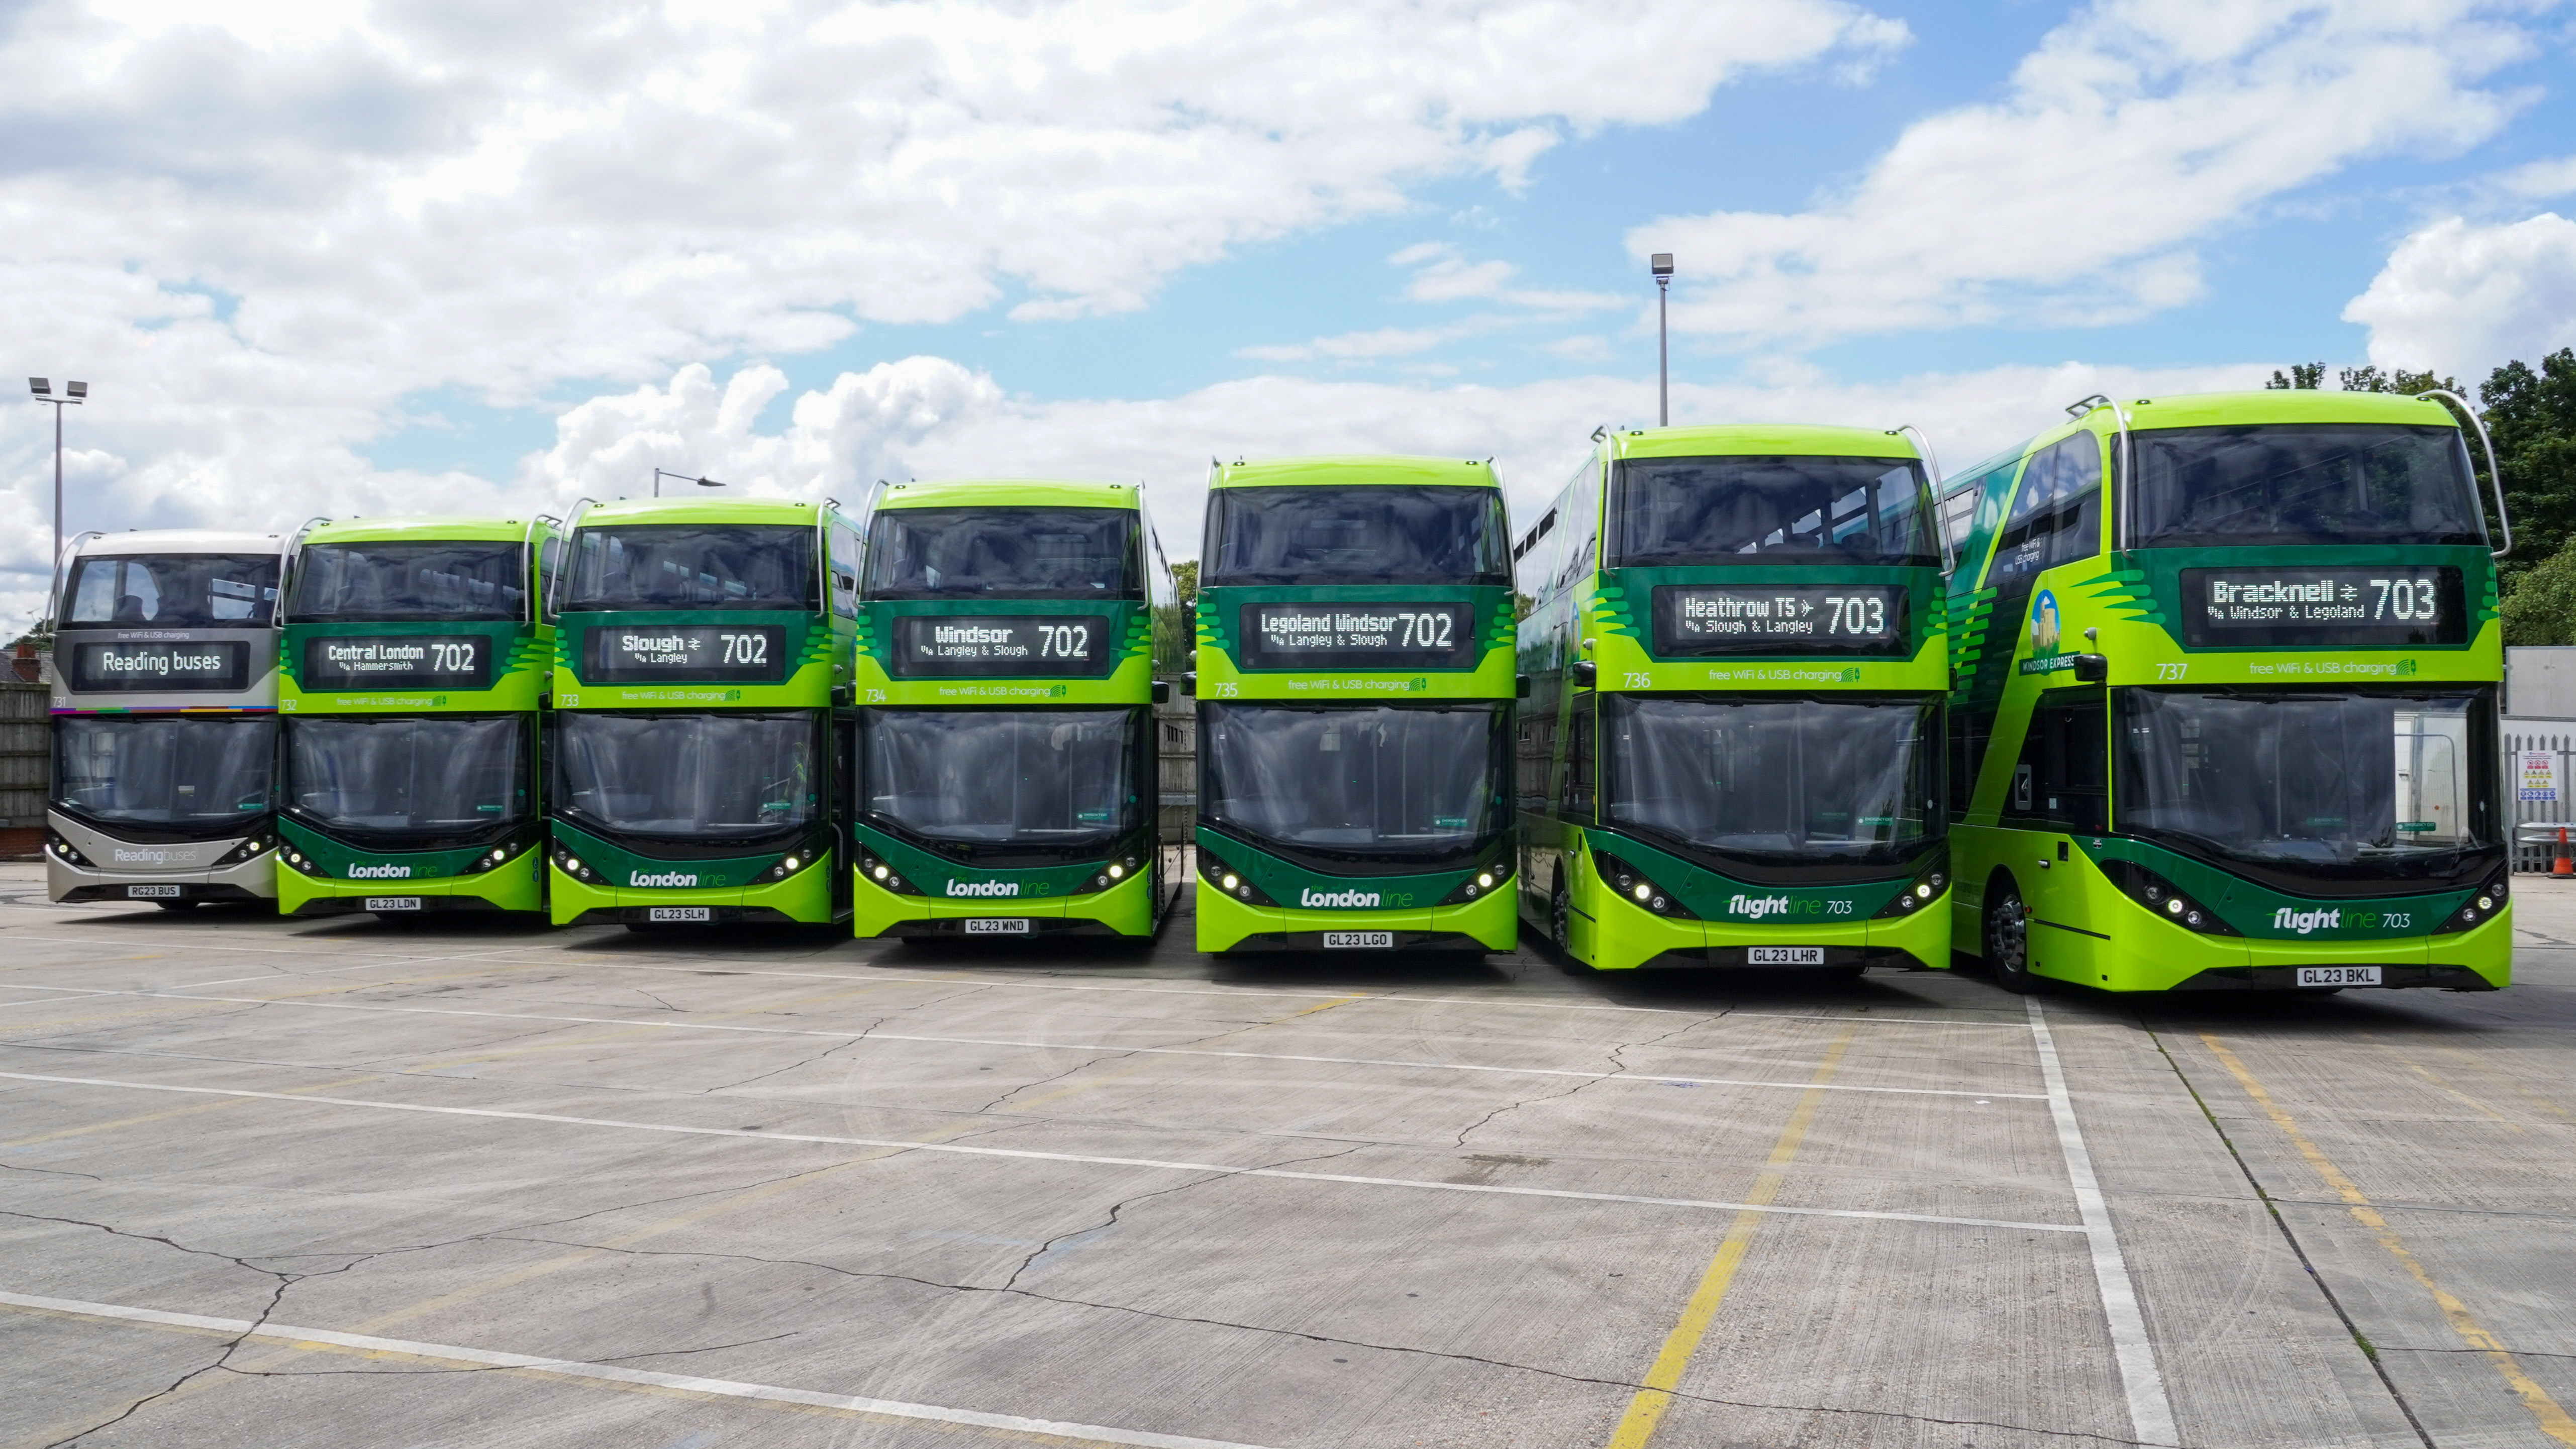 Seven Enviro400s for rebranded Green Line